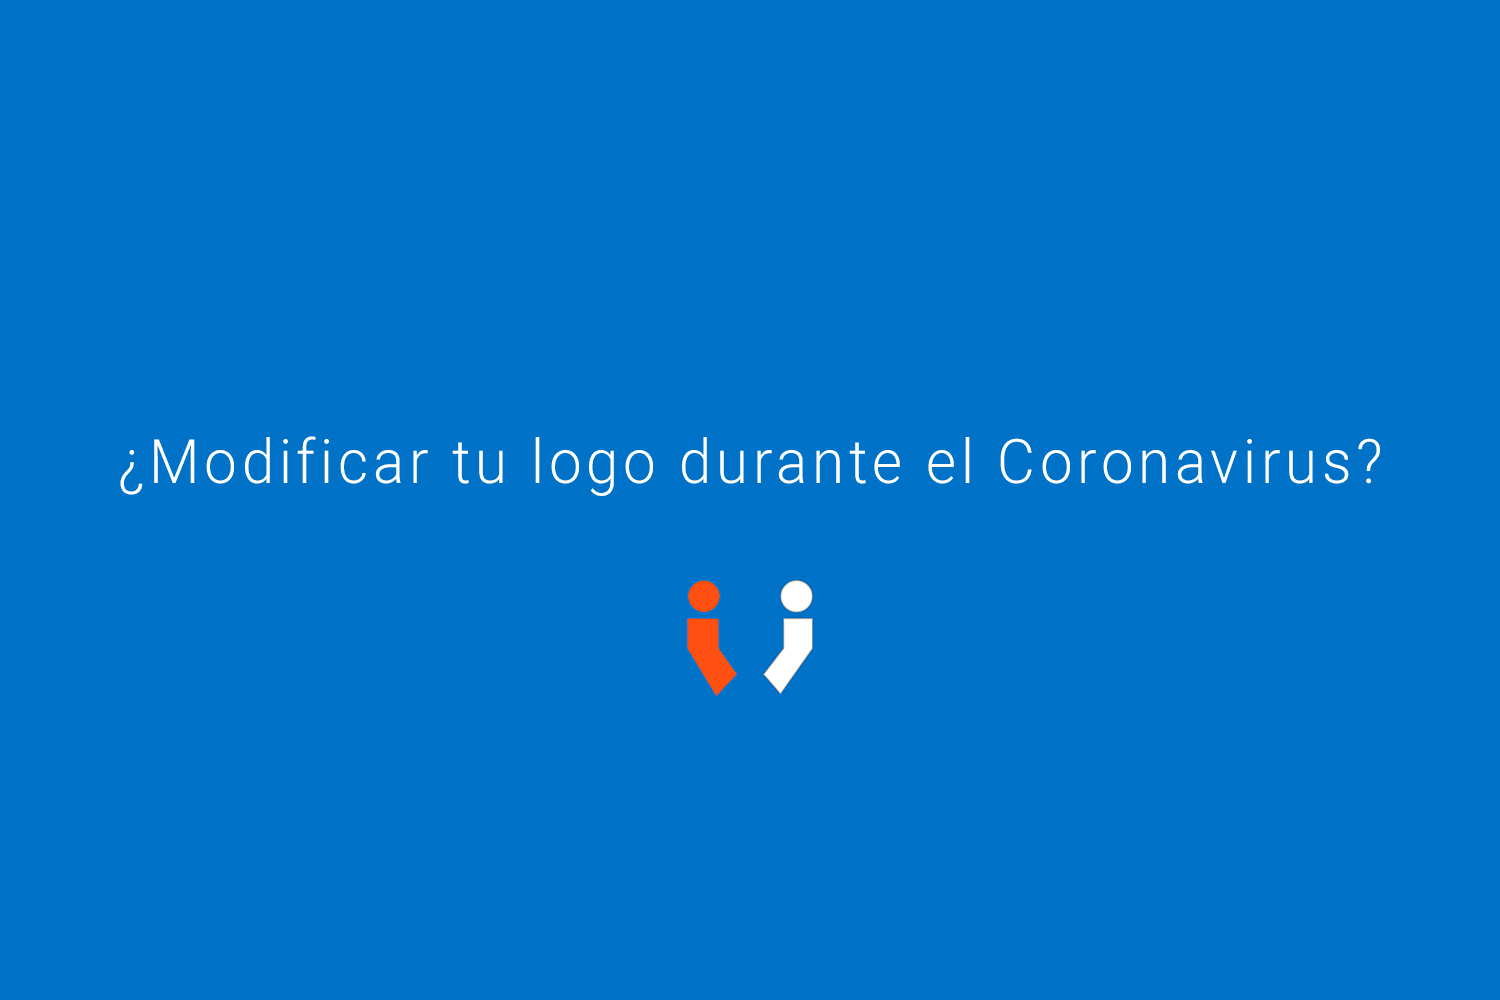 Modifacion de logo por el Coronavirus